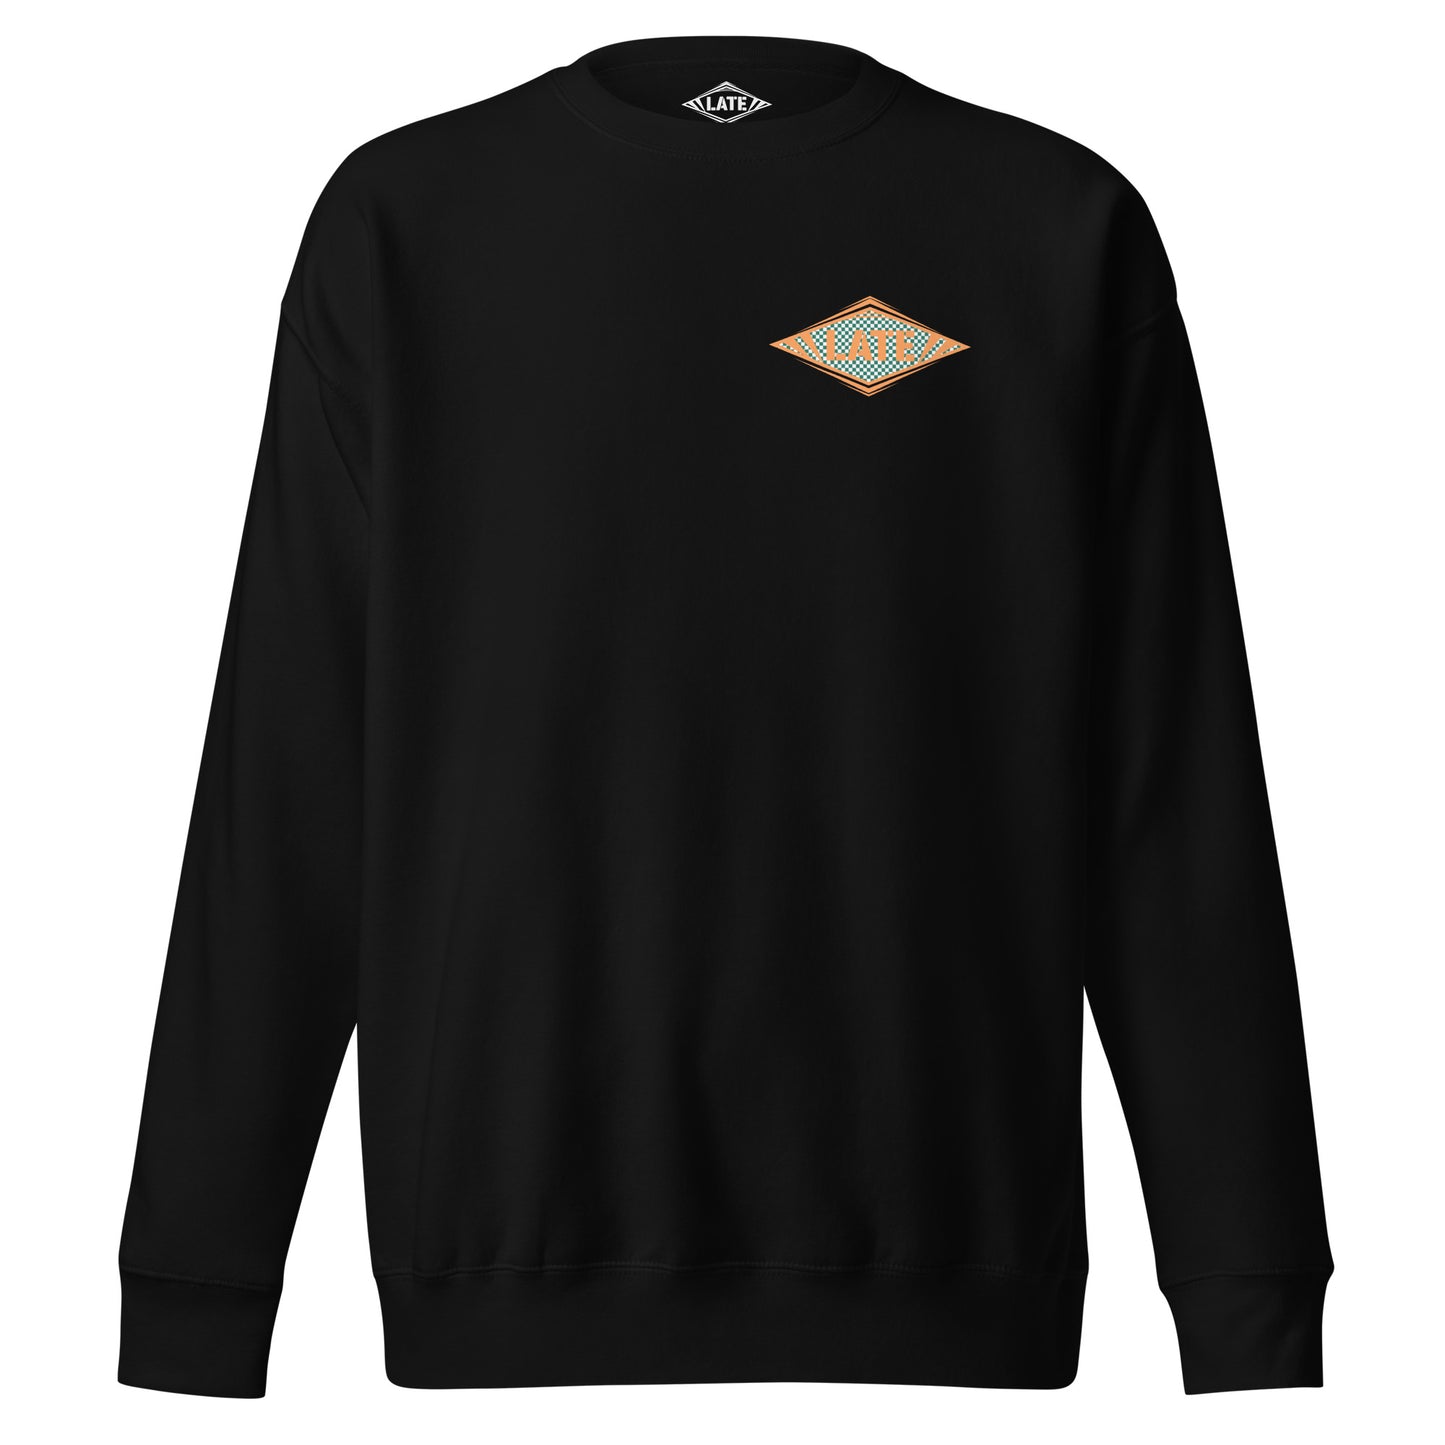 Sweatshirt Shred It logo Late à carreaux style Vans skateboarding sweat-shirt unisex couleur noir